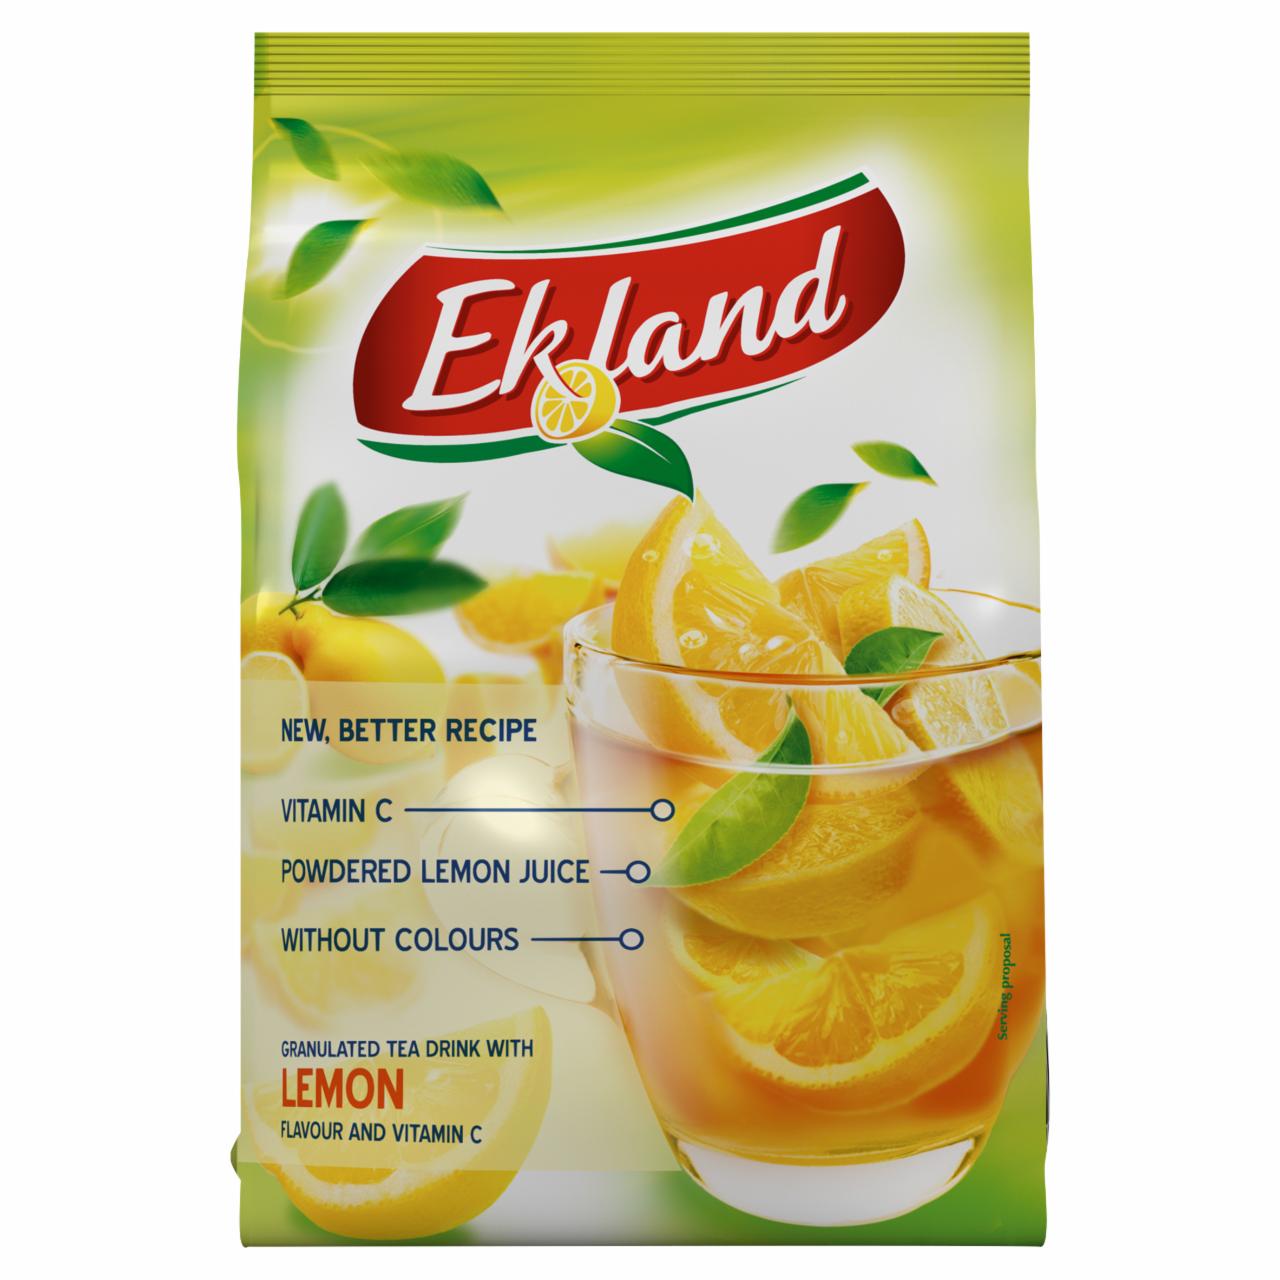 Képek - Ekland azonnal oldódó citrom ízű tea üdítőitalpor C-vitaminnal 300 g